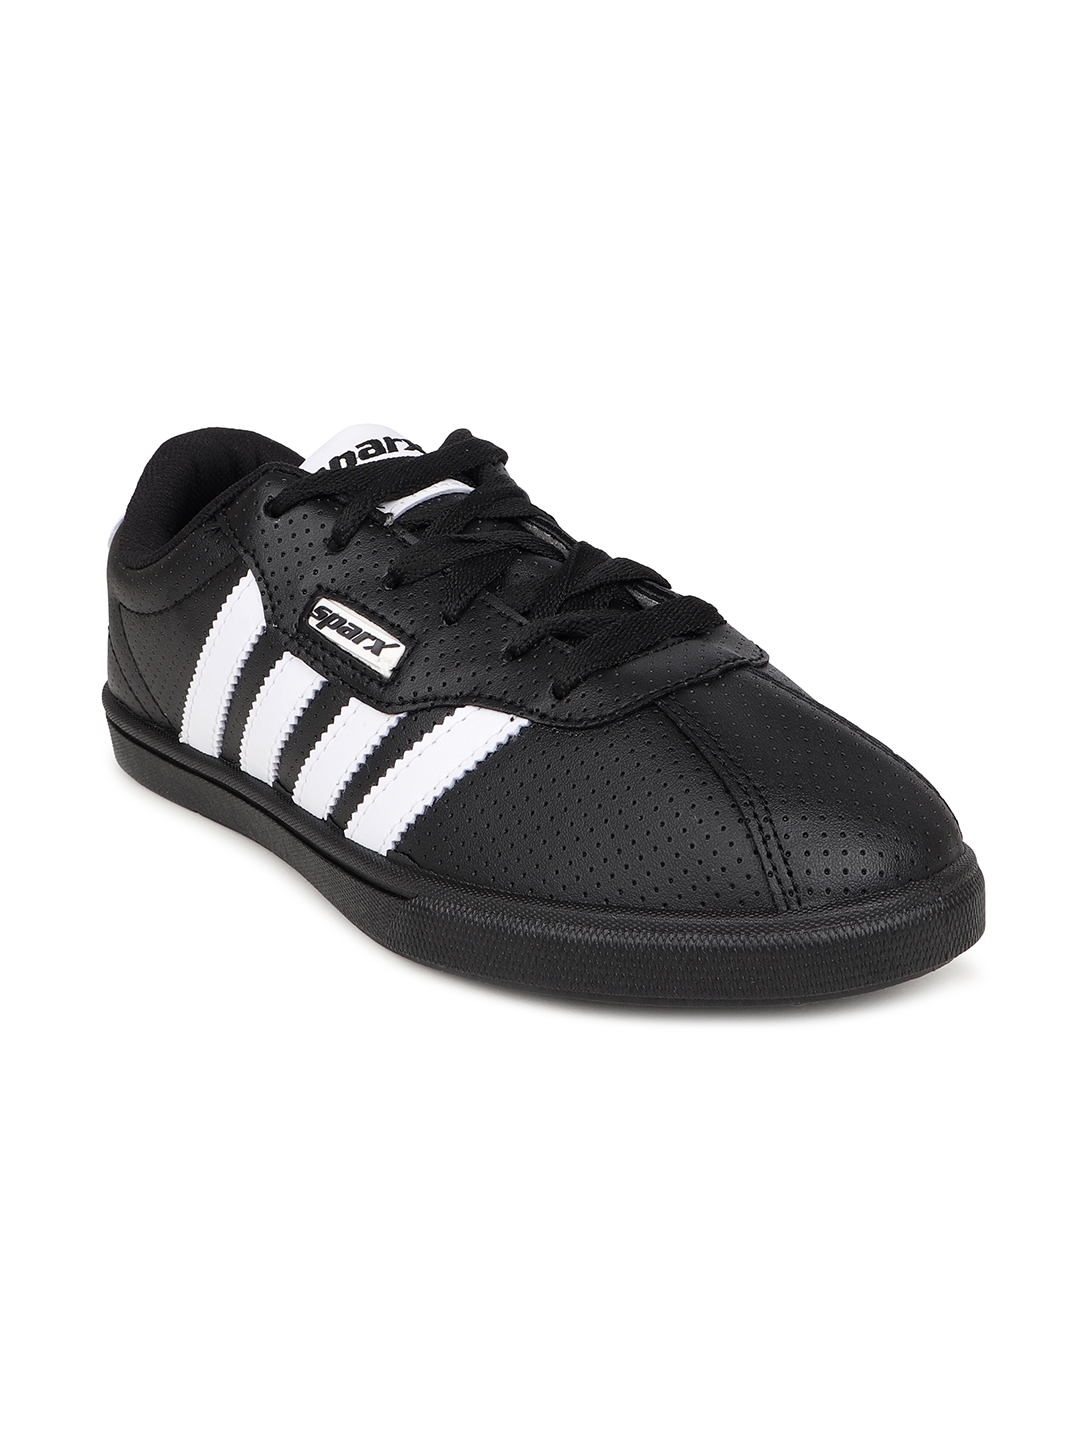 Buy Sparx Men's Black Sneakers - 6 UK (SM-03) at Amazon.in